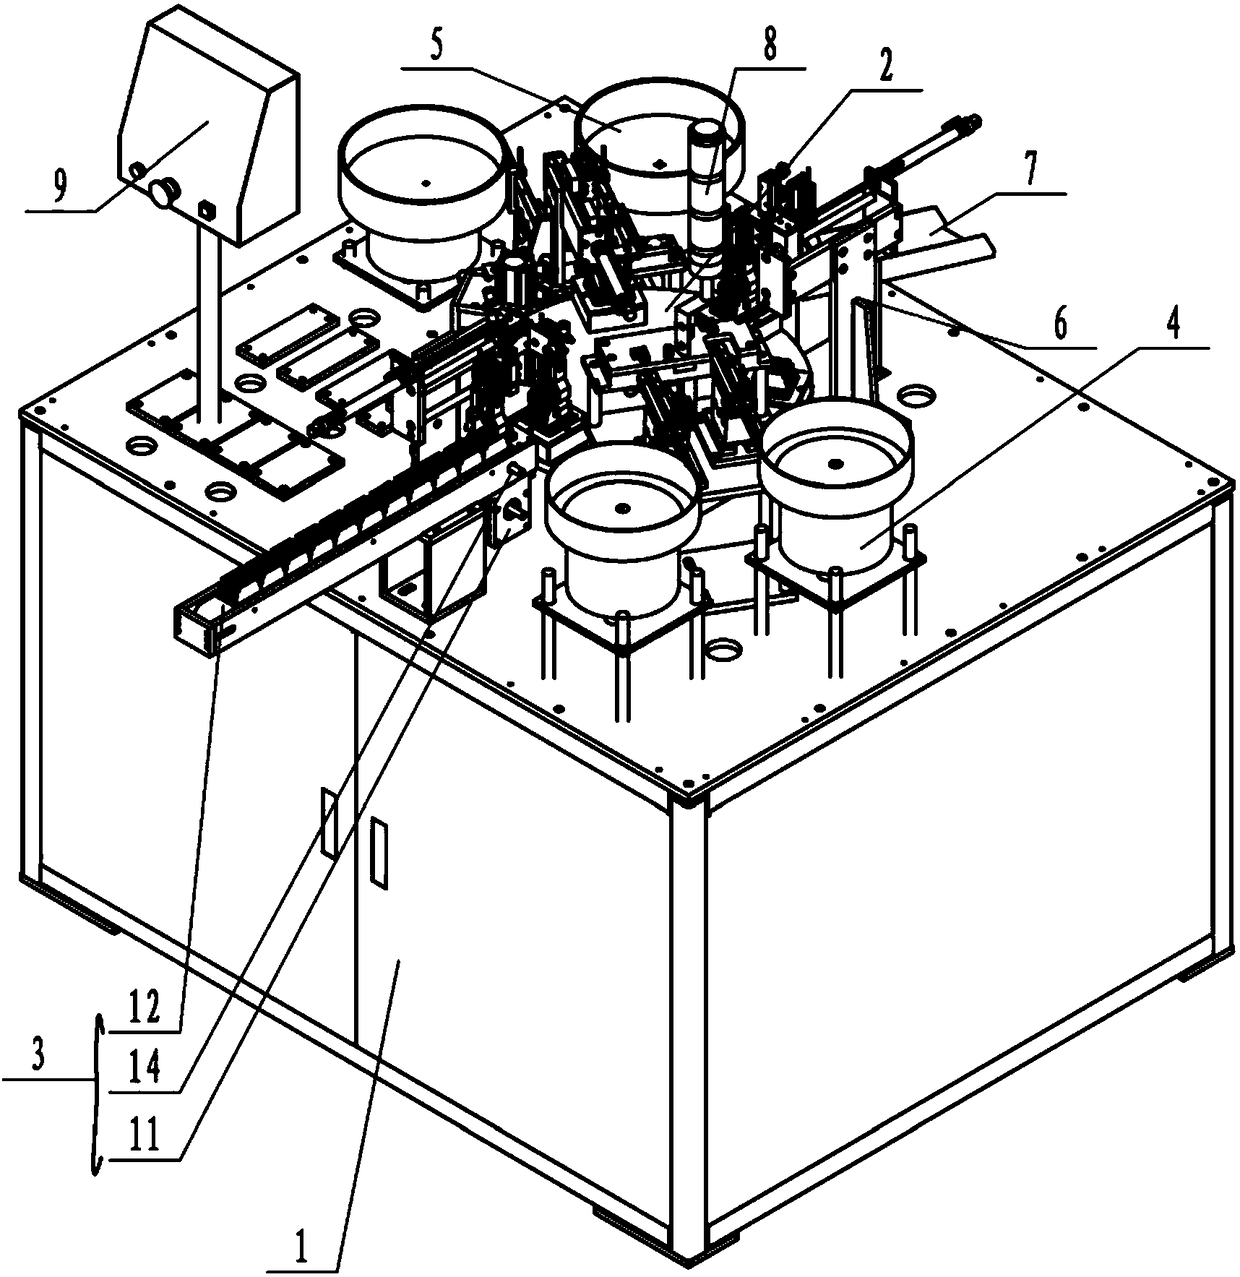 A radiator assembly device